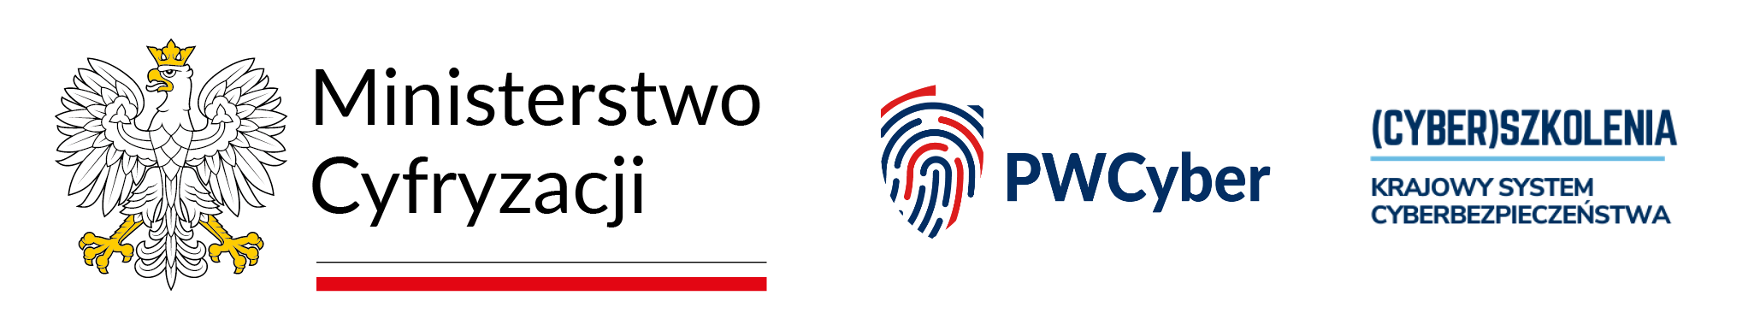 Logo Ministerstwa Cyfryzacji, PWrCyber i Krajowego Systemu Cyberbezpieczeństwa